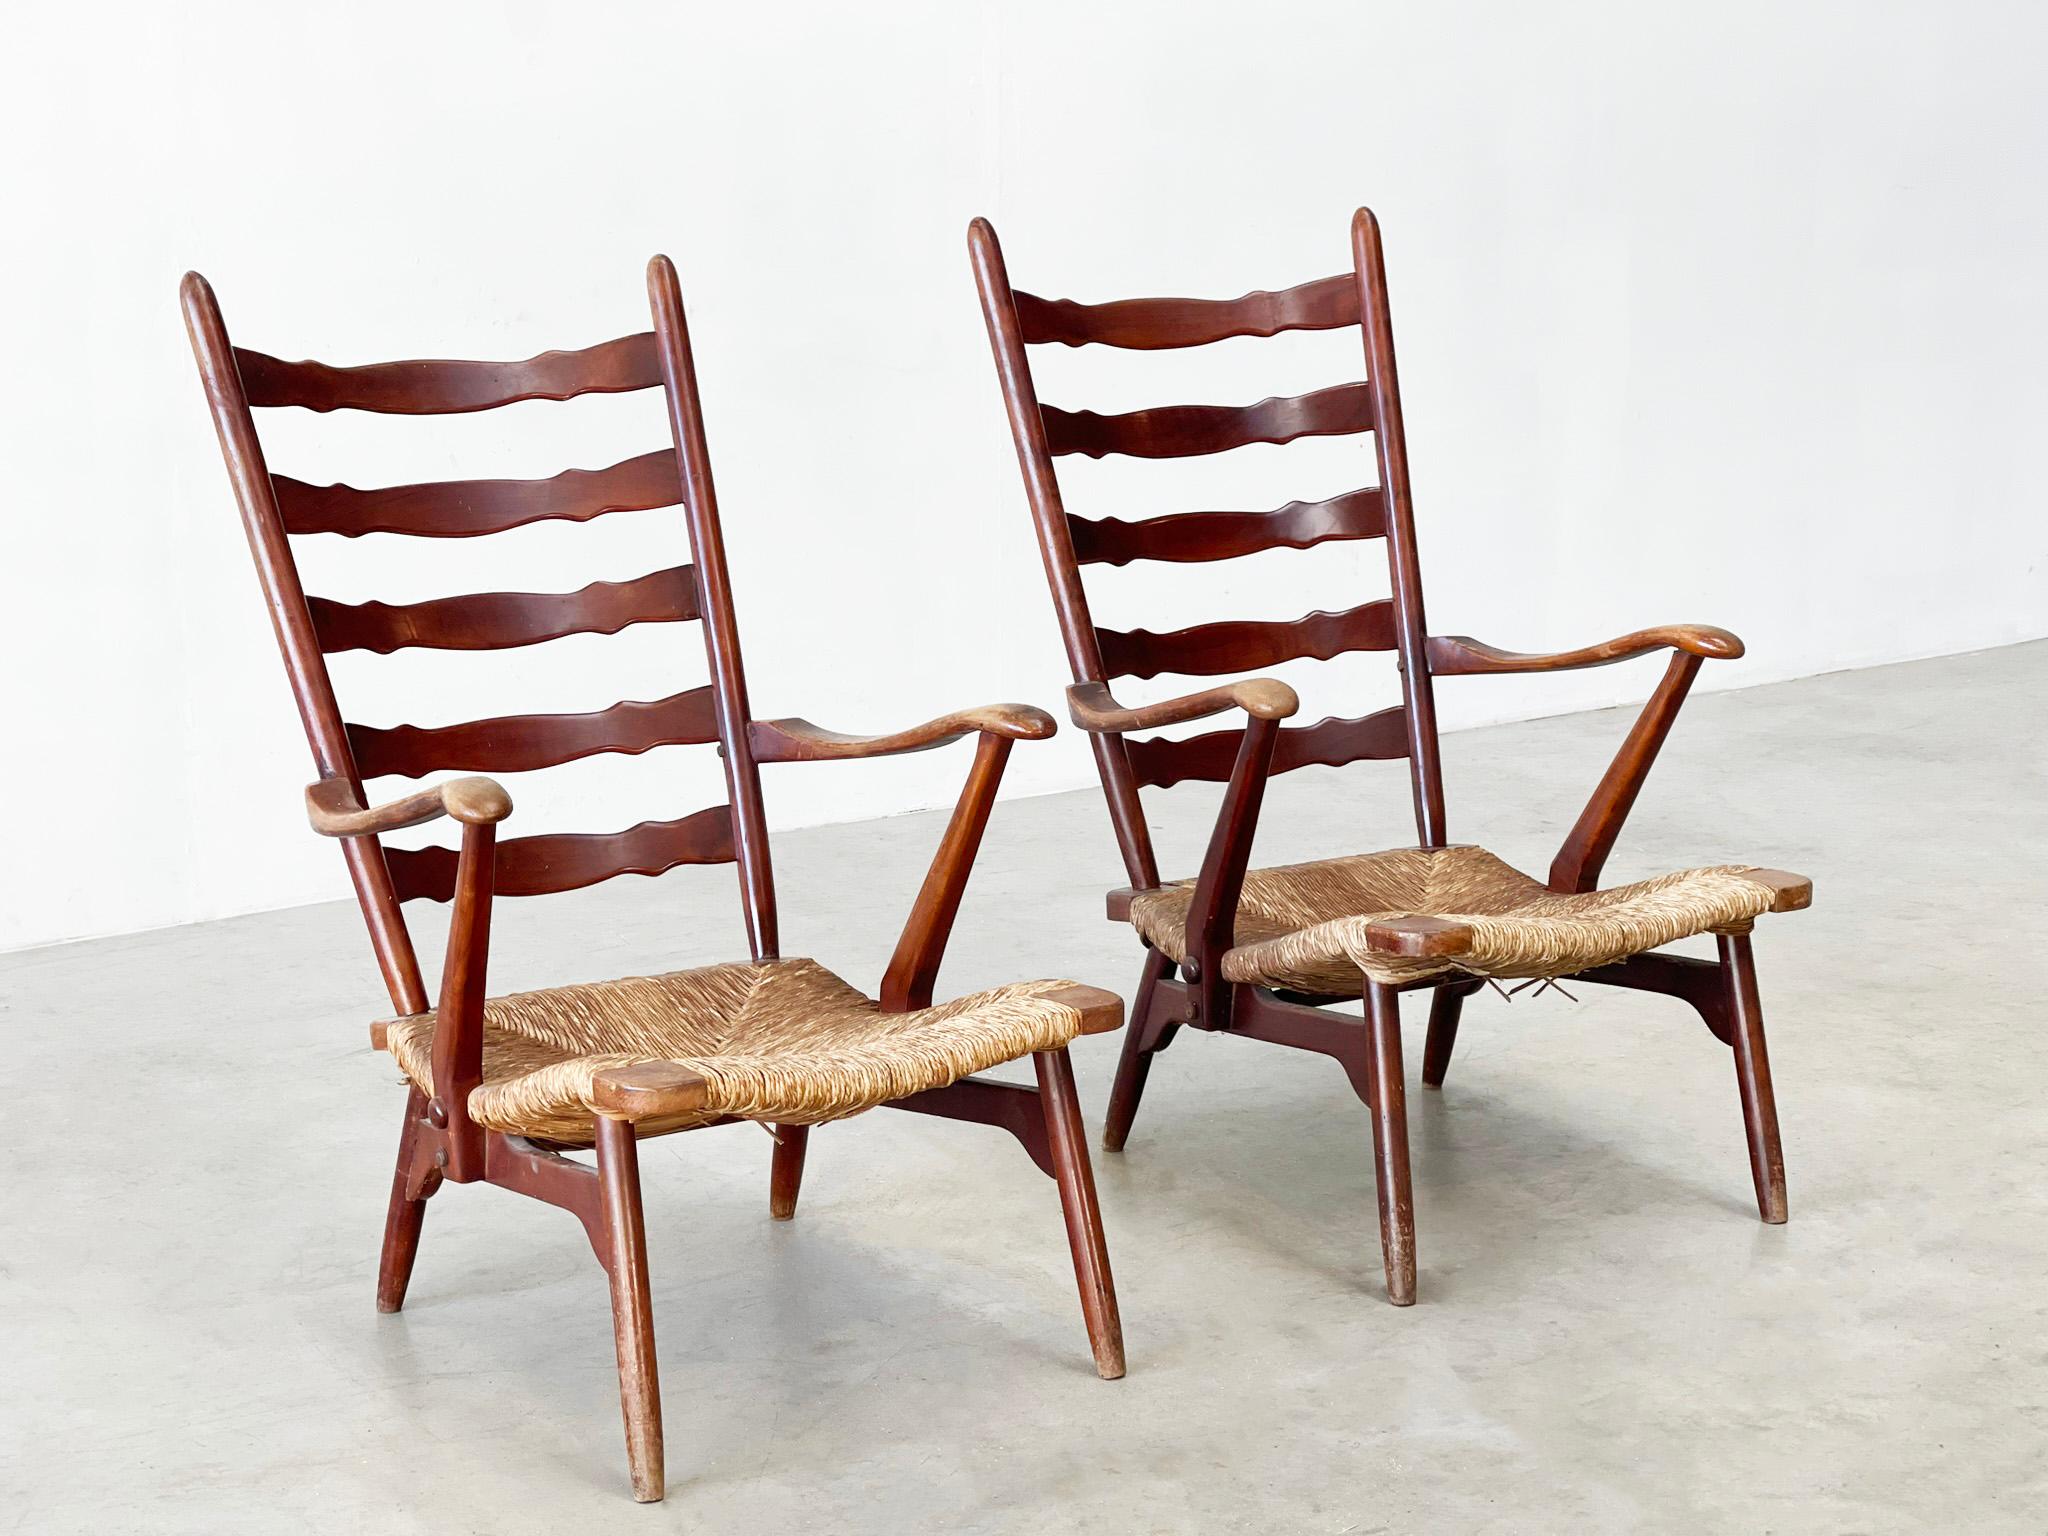 Seltener Satz von Dester Gelderland Sesseln
Seltener Satz rustikaler Loungesessel. Diese Stühle wurden in den 1950er Jahren von De Ster Gelderland entworfen und herausgebracht. Dies ist eine seltene Version der Stühle und man sieht sie nicht sehr